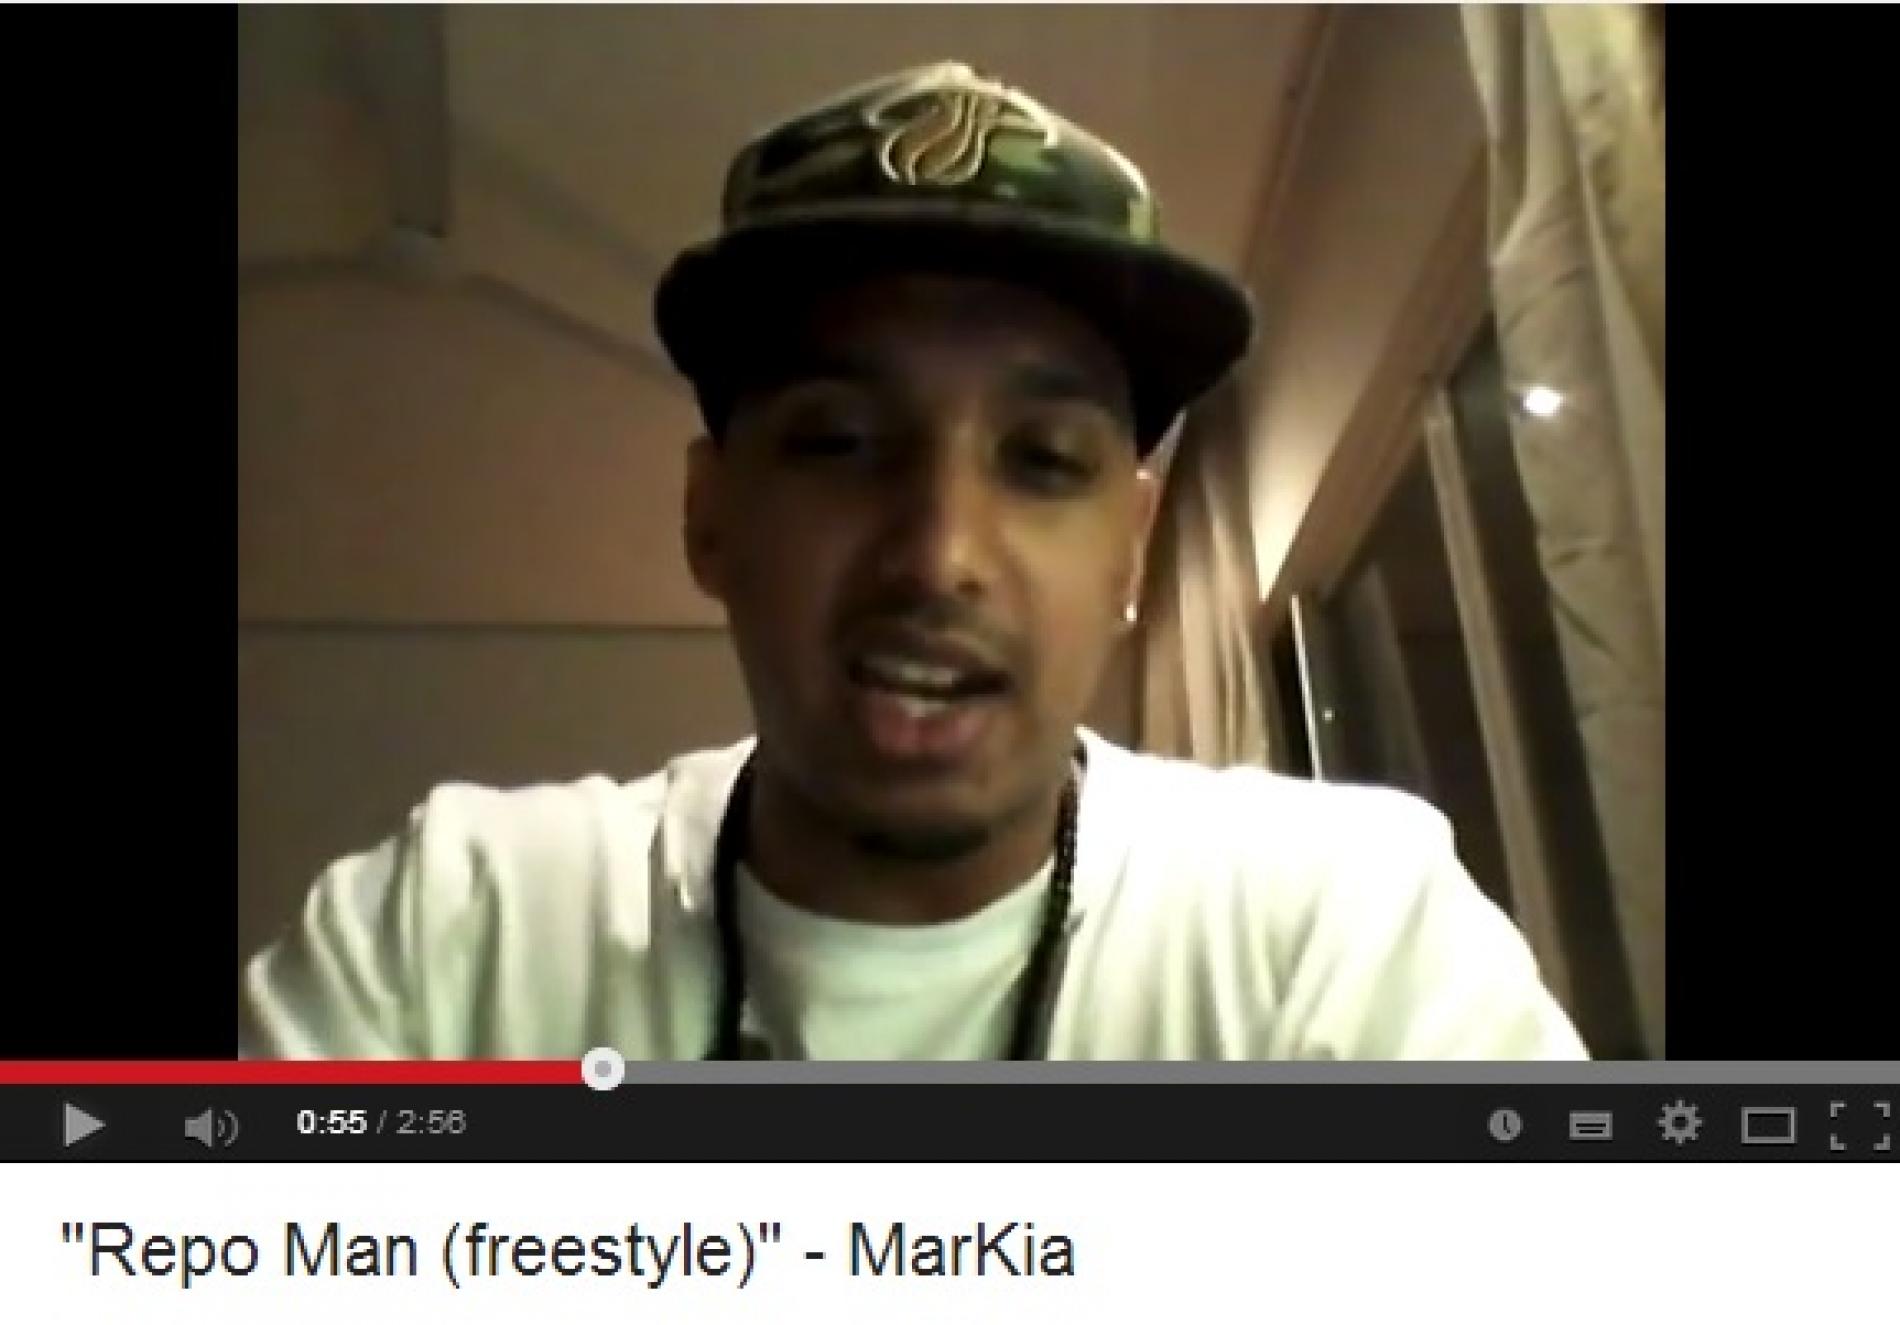 MarKia – “Repo Man (freestyle)”